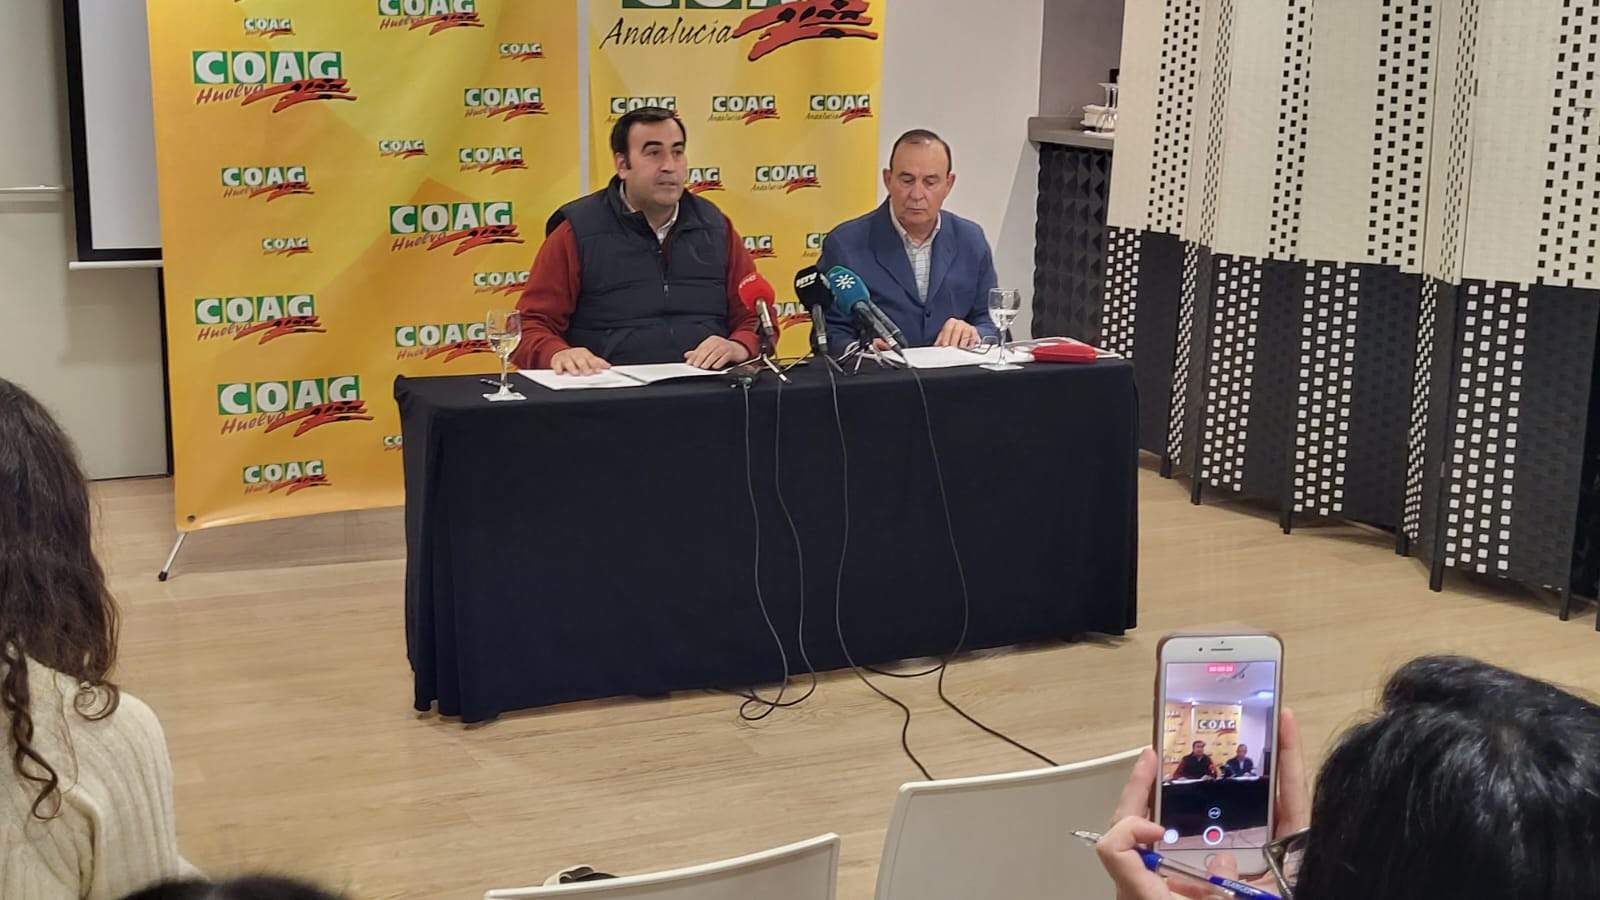 COAG alerta de un "entramado de empresas" que traen frutos rojos de Marruecos y reetiquetan en Huelva